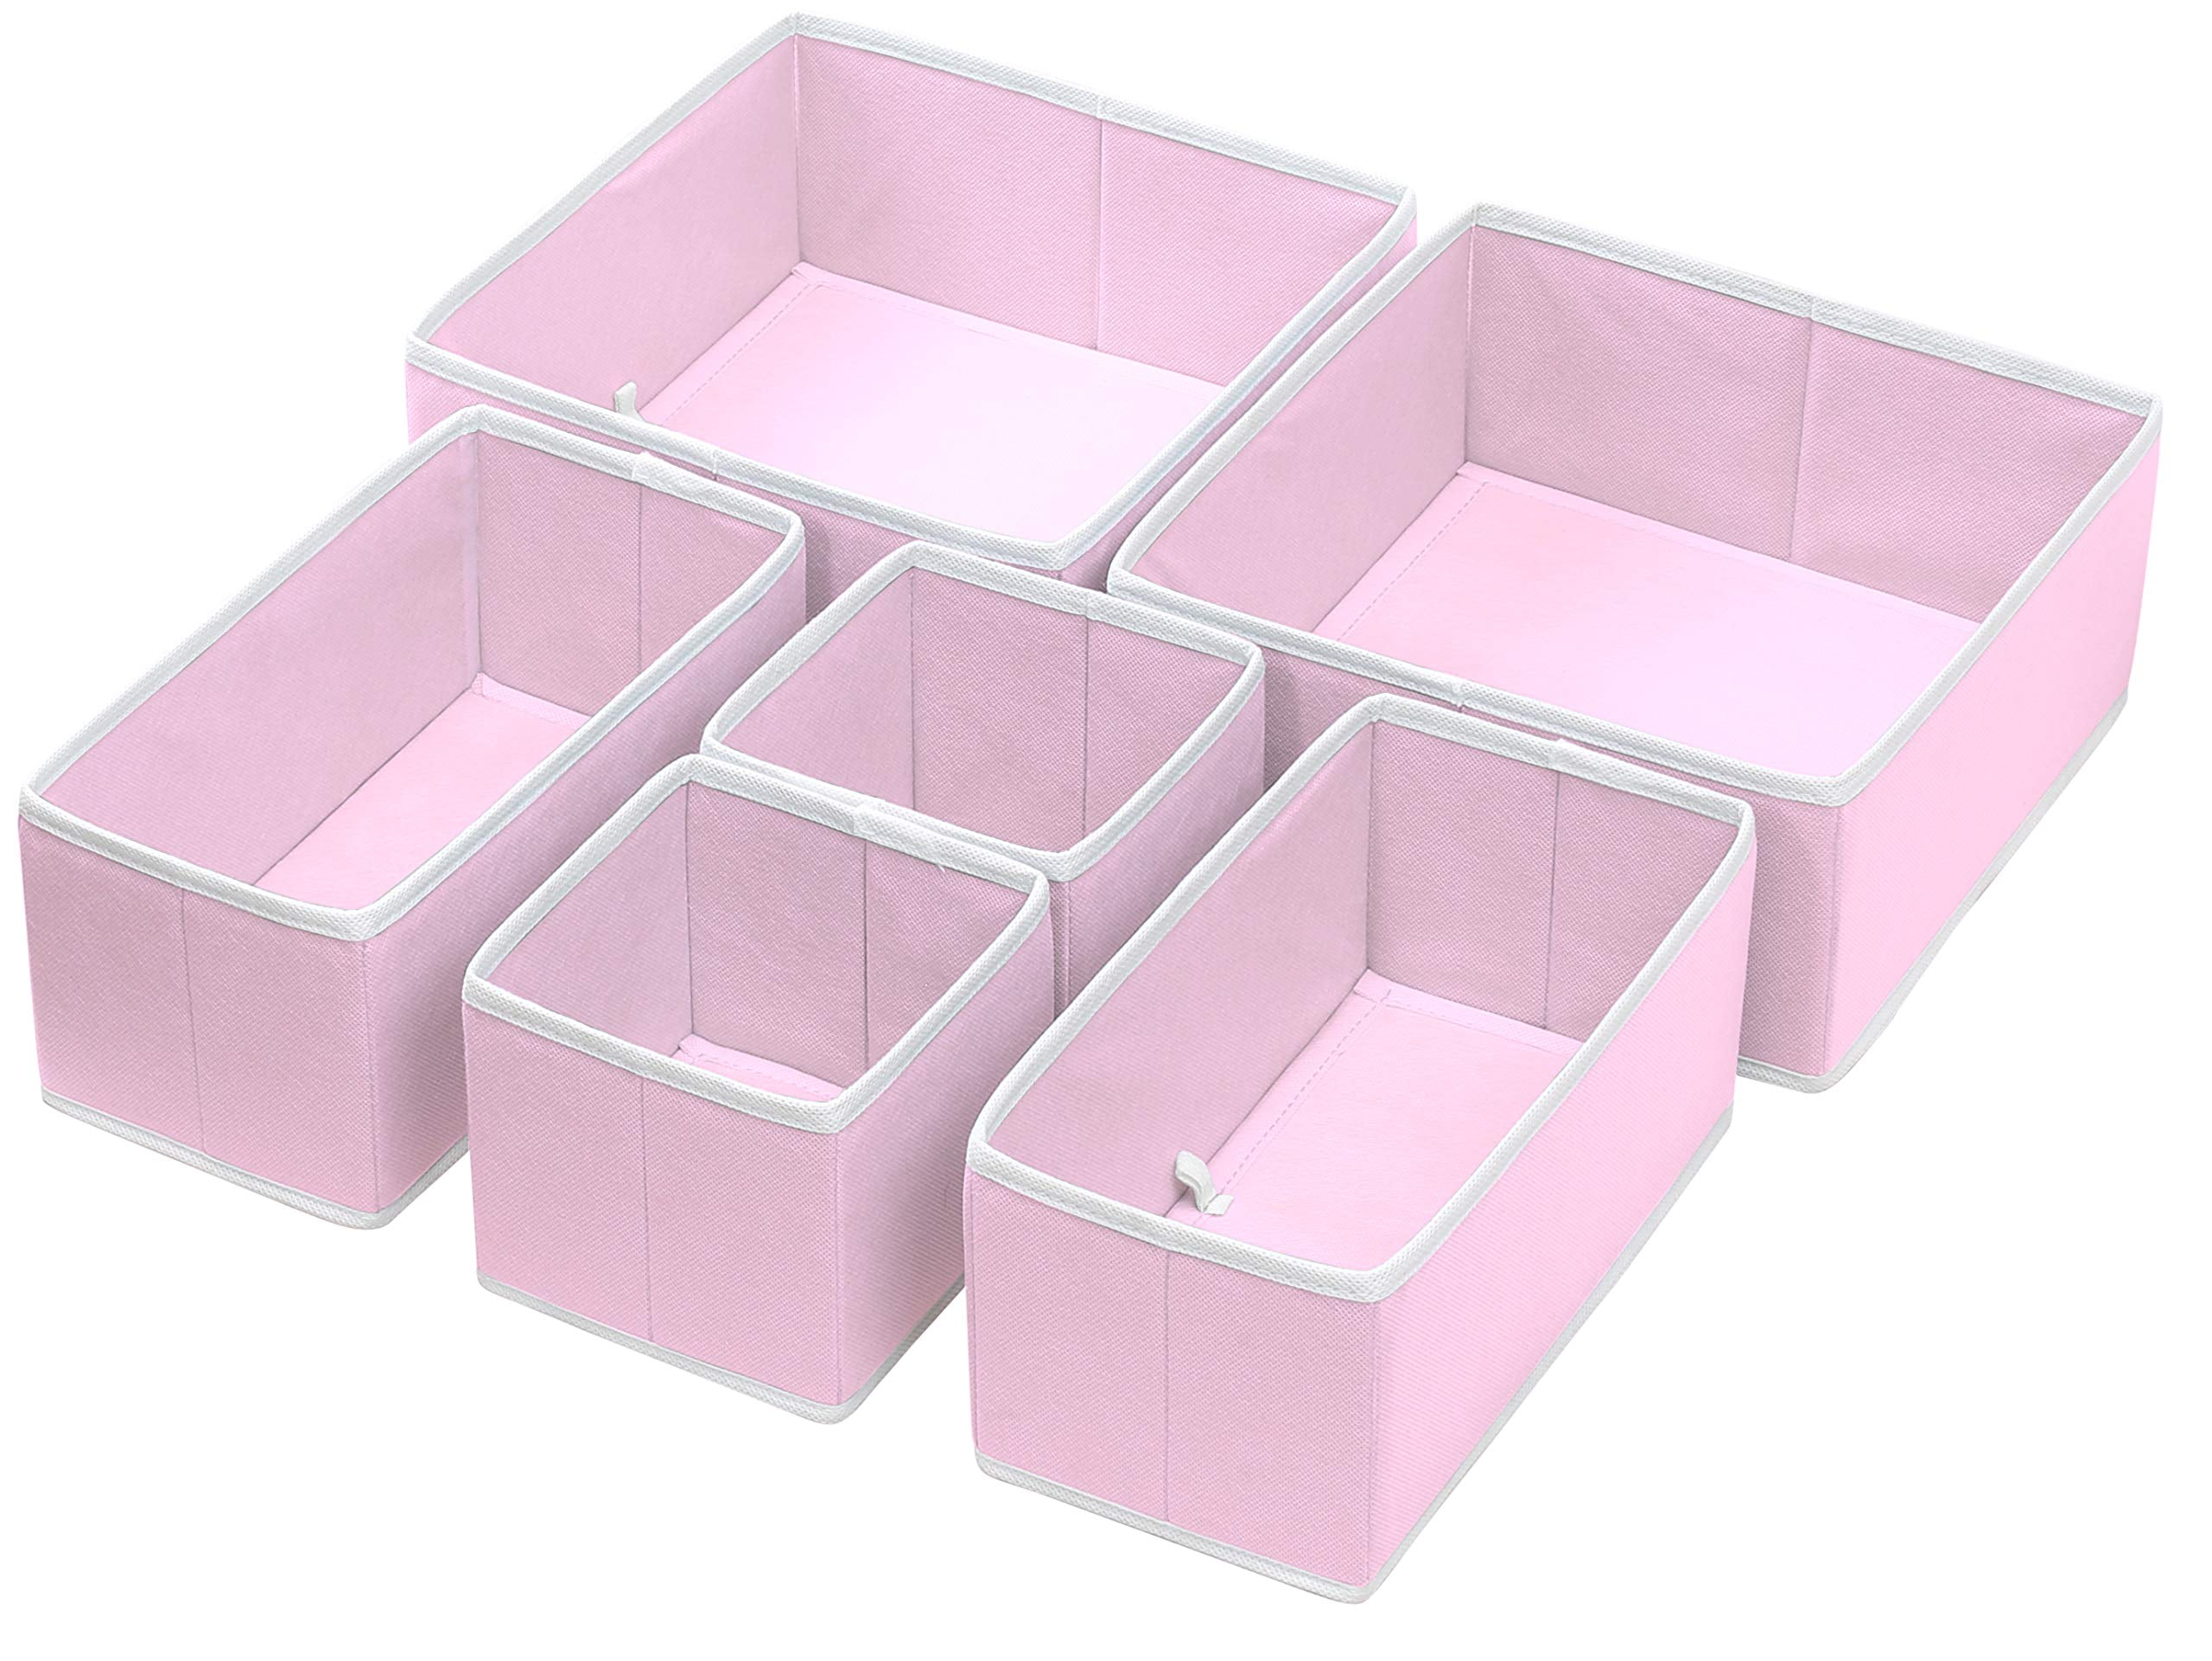 SimpleHouseware Foldable Cloth Storage Box Closet Dresser Drawer Divider  Organizer Basket Bins for Underwear Bras, Pink (Set of 6)